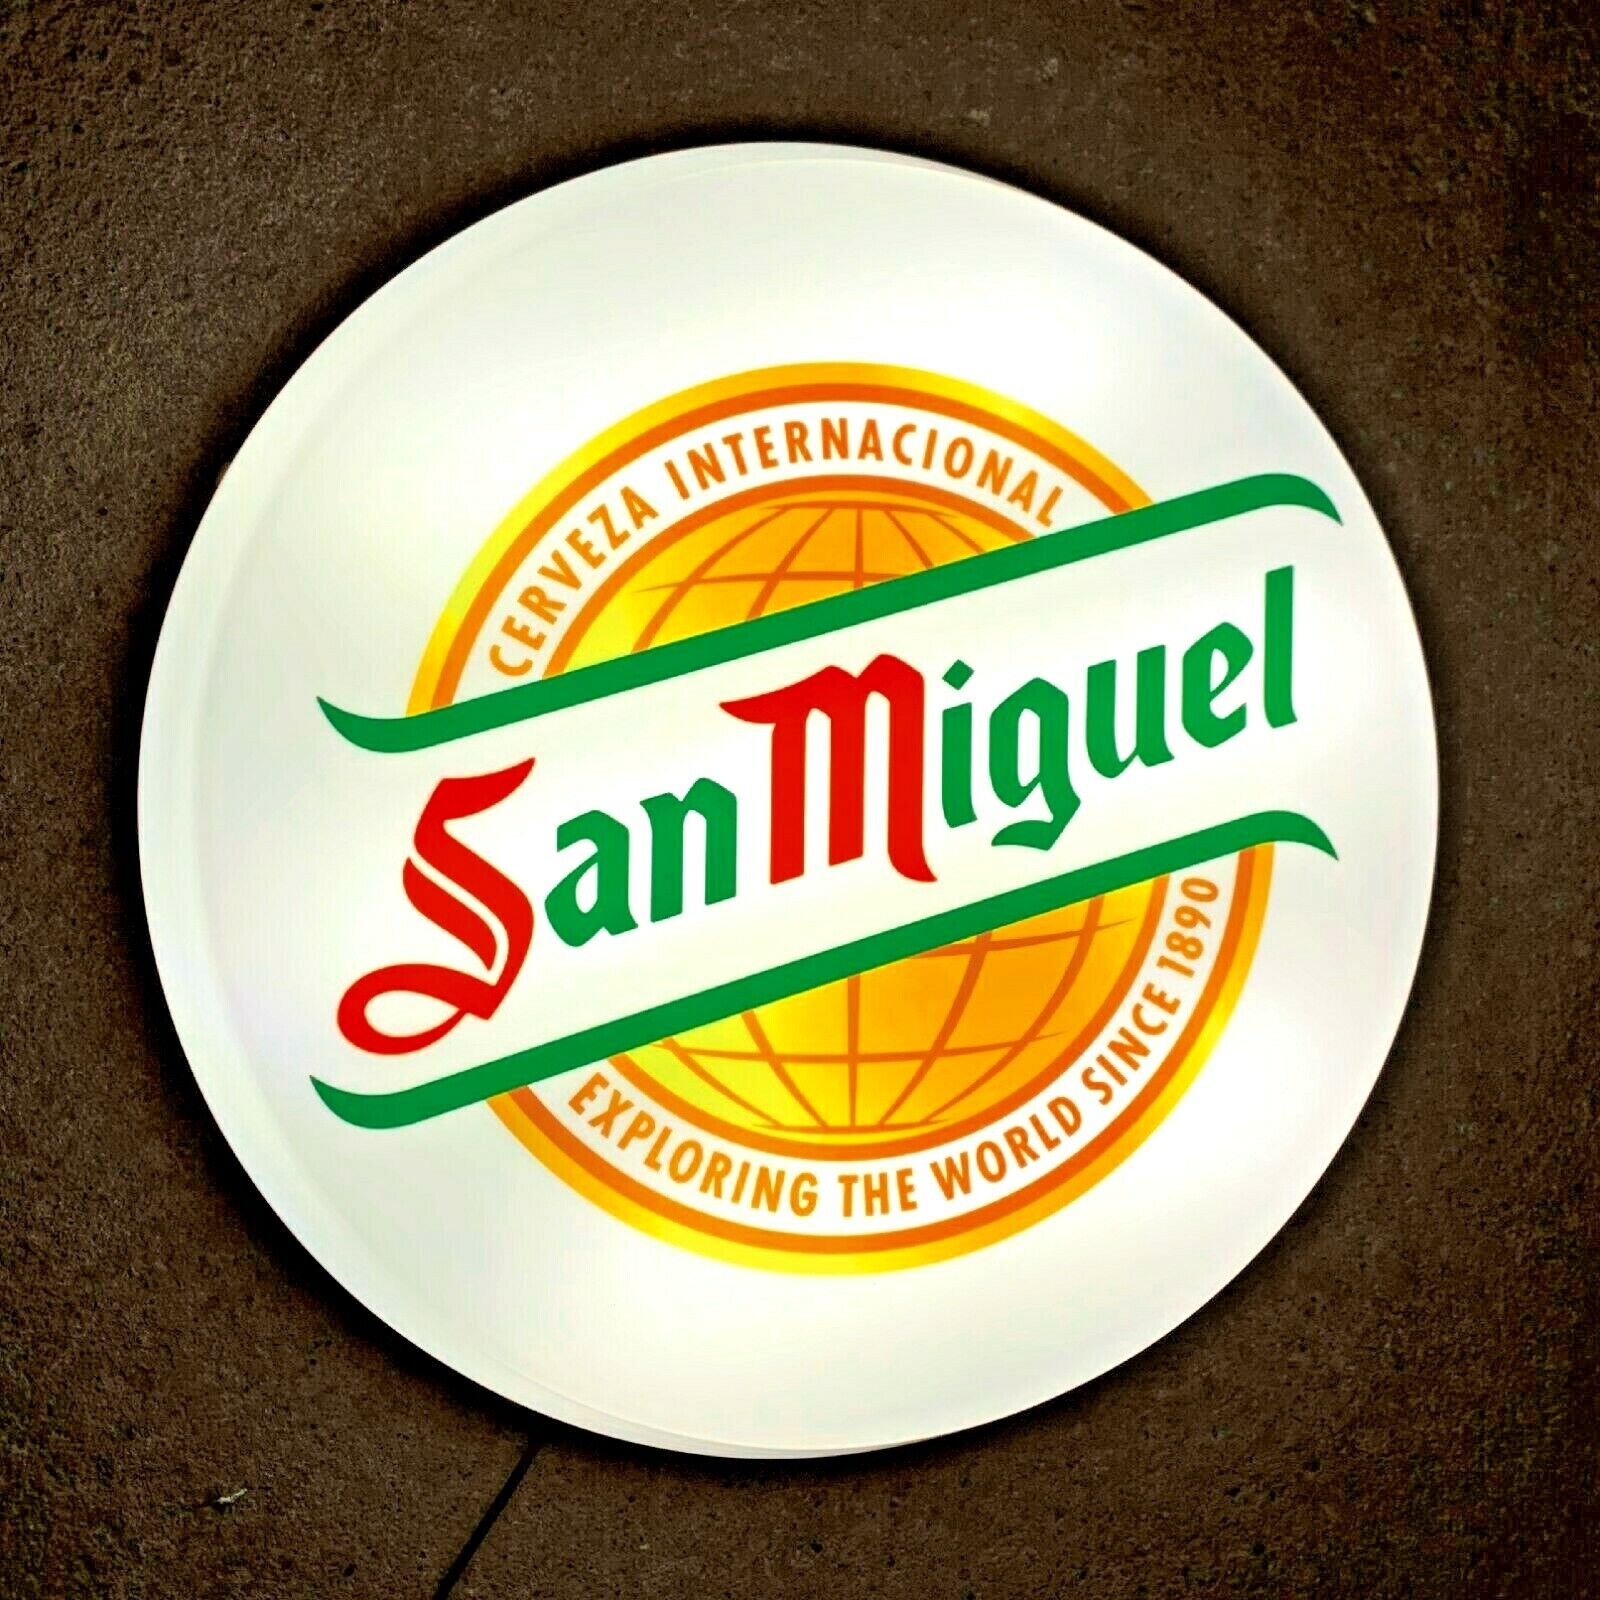 SAN MIGUEL Light LED bar wall sign logo Pub Lager beer ale man cave garage shed